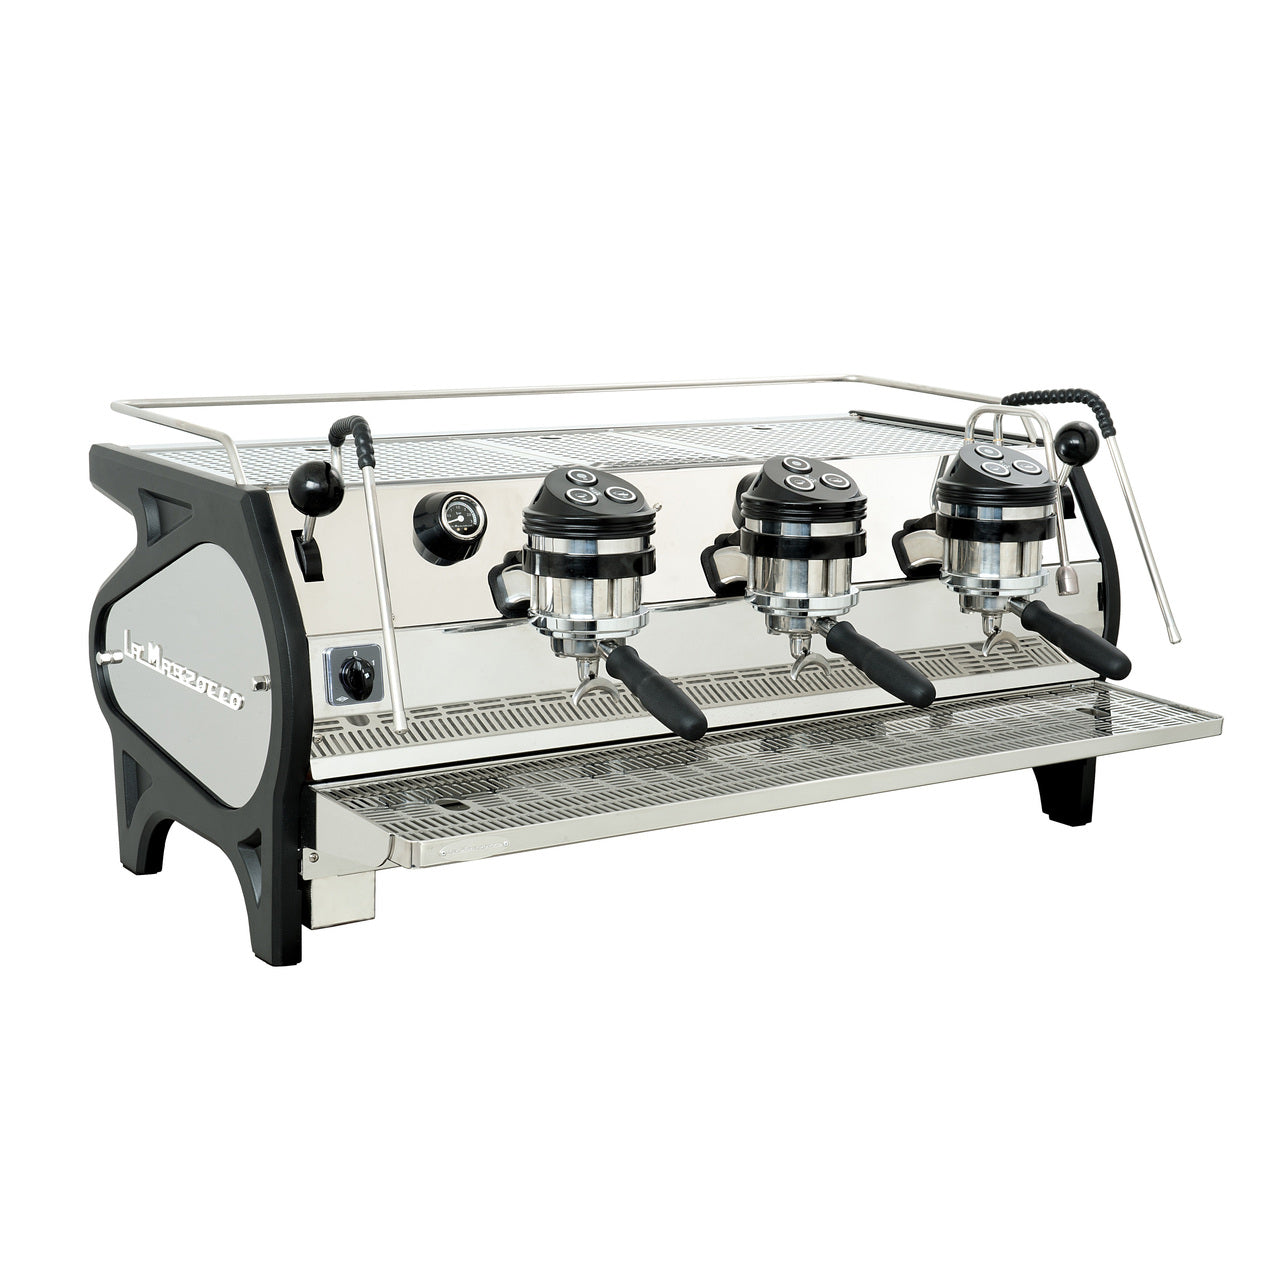 Stove-top aluminum espresso maker –